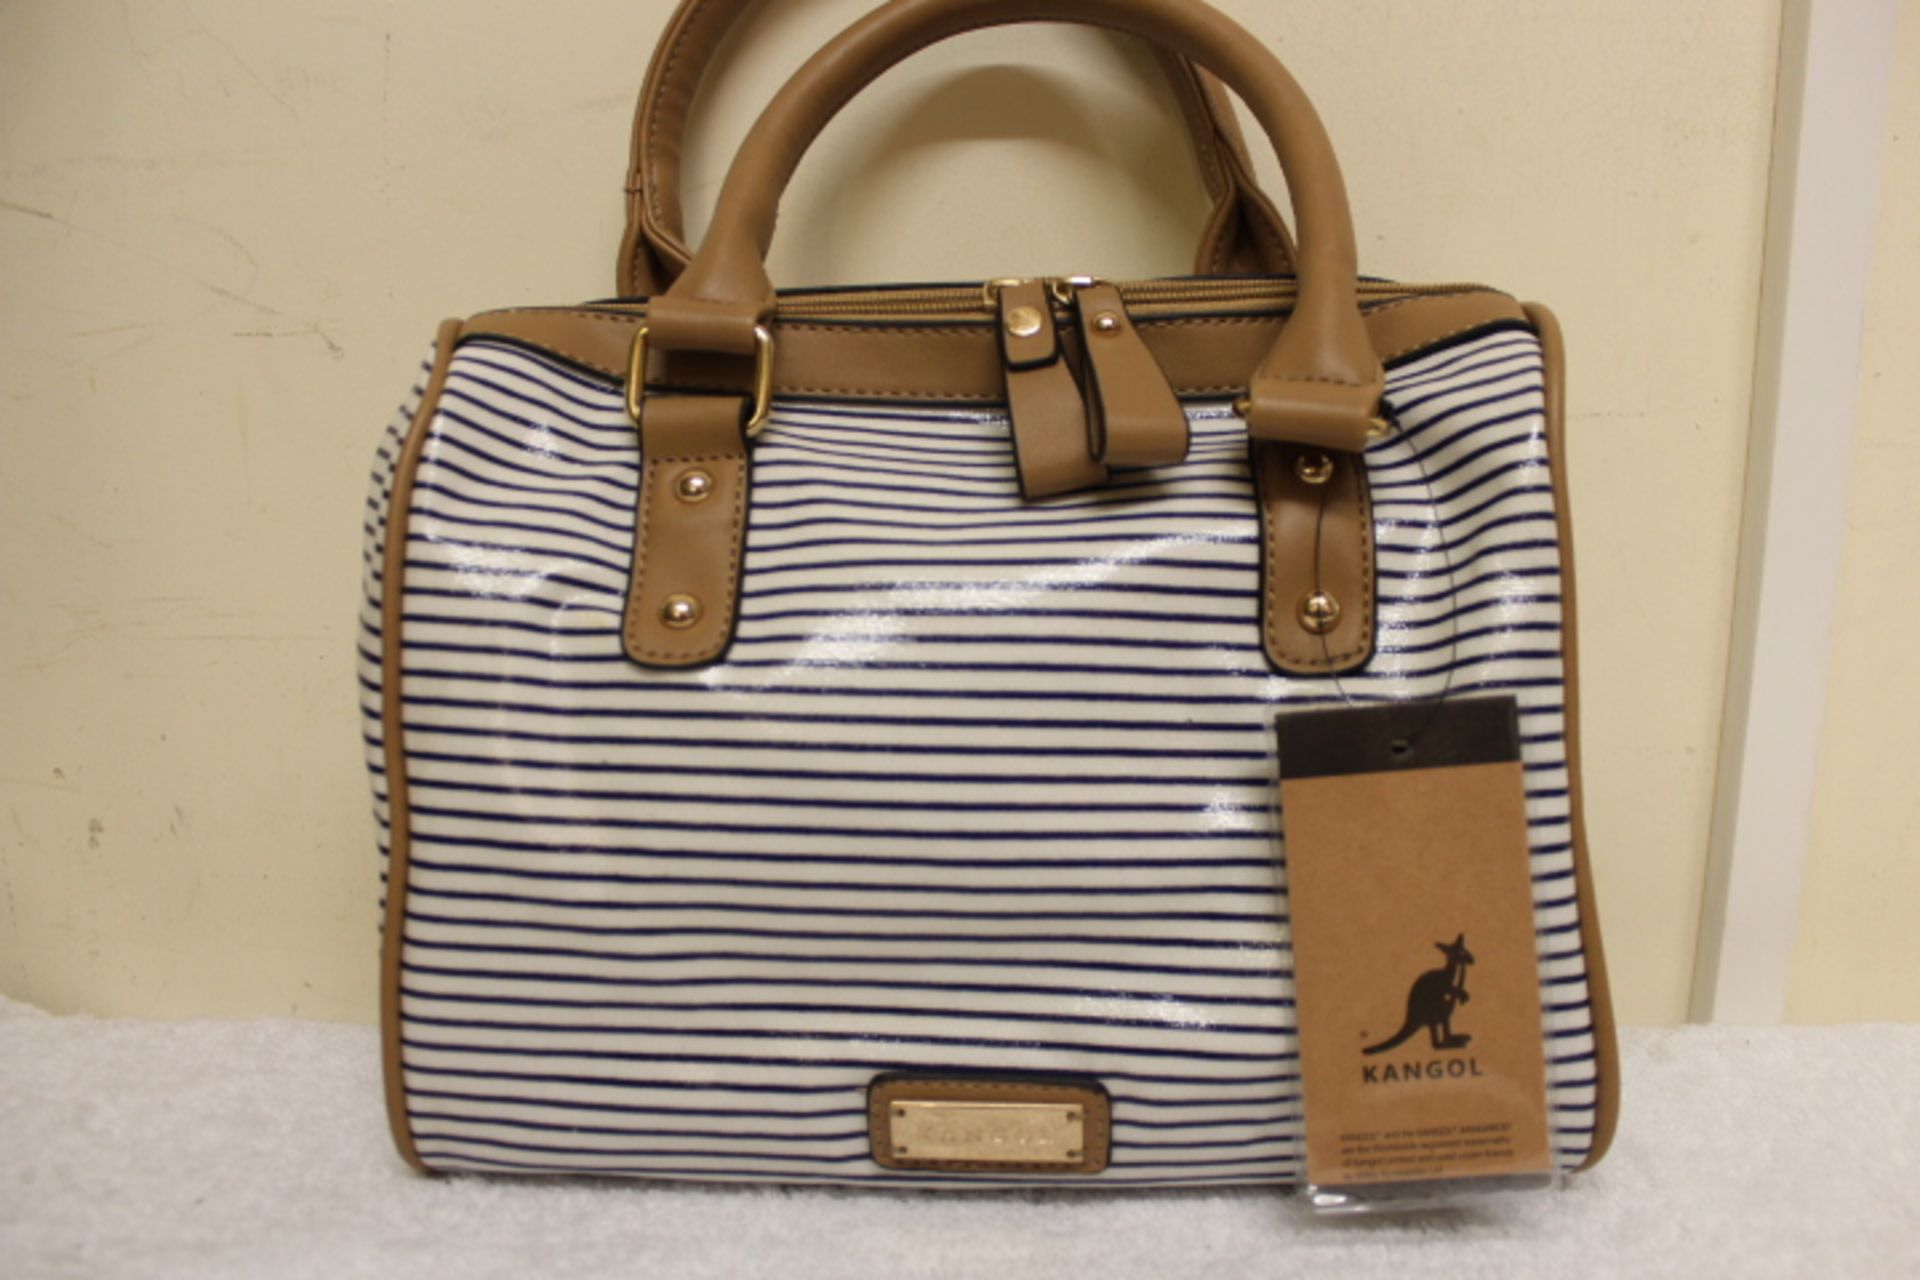 V Brand New Kangol Blue/White Stripe Barrel Handbag - Image 3 of 3